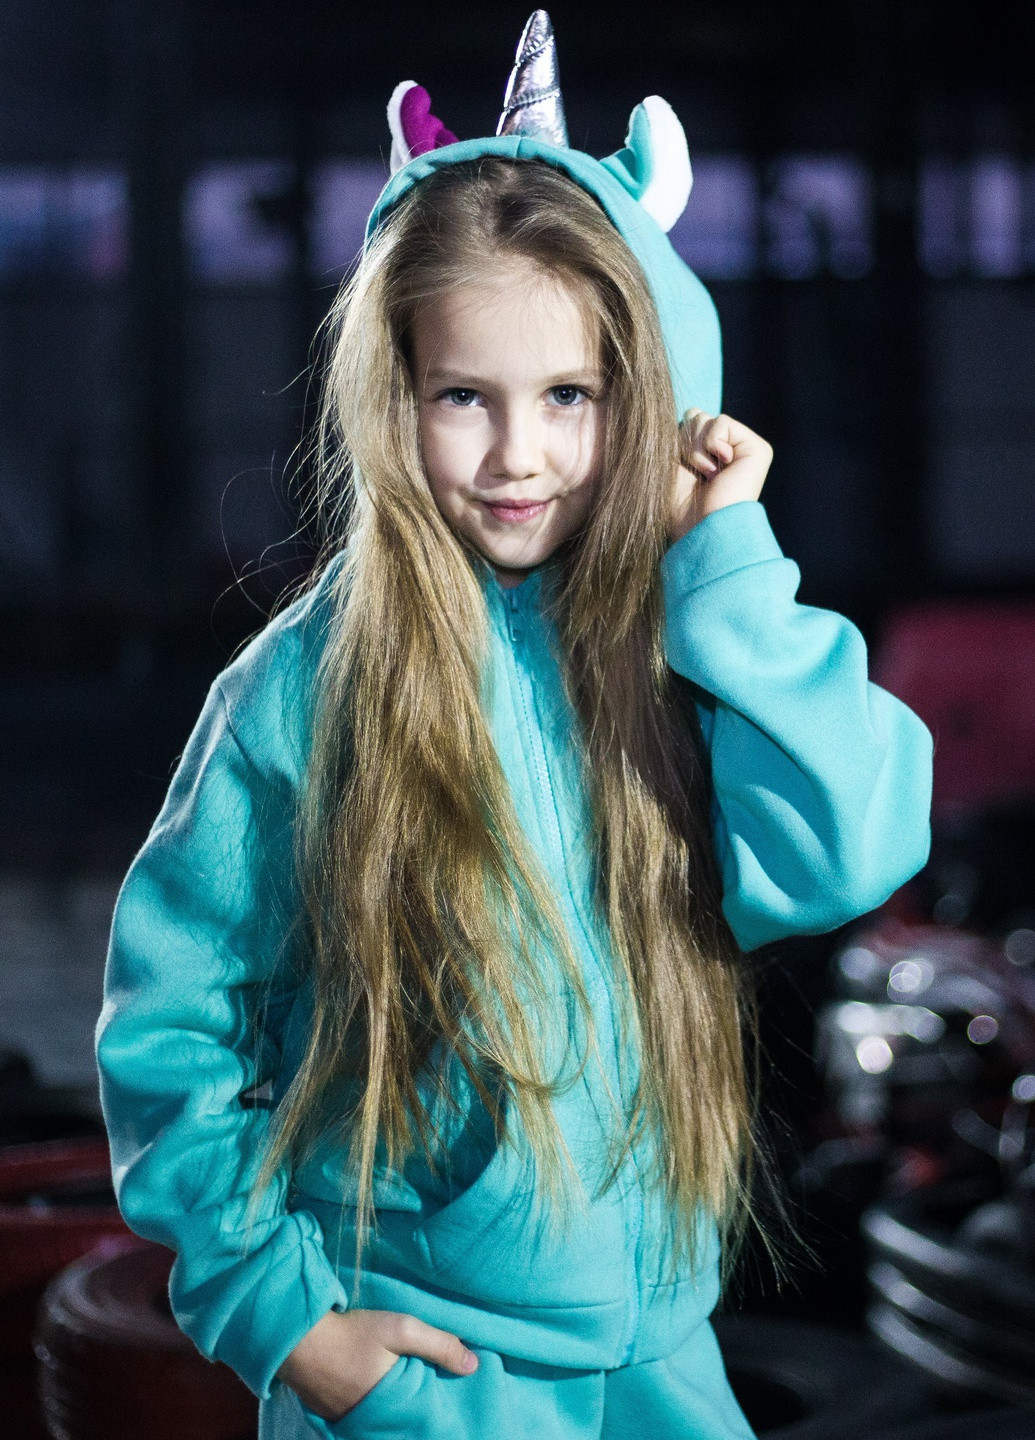 Бірюзовий демісезонний дитячий спортивний трикотажний костюм-трансформер з іграшкою єдиноріг дівчинка бірюзовий 104-140 4-11 років Zabavka